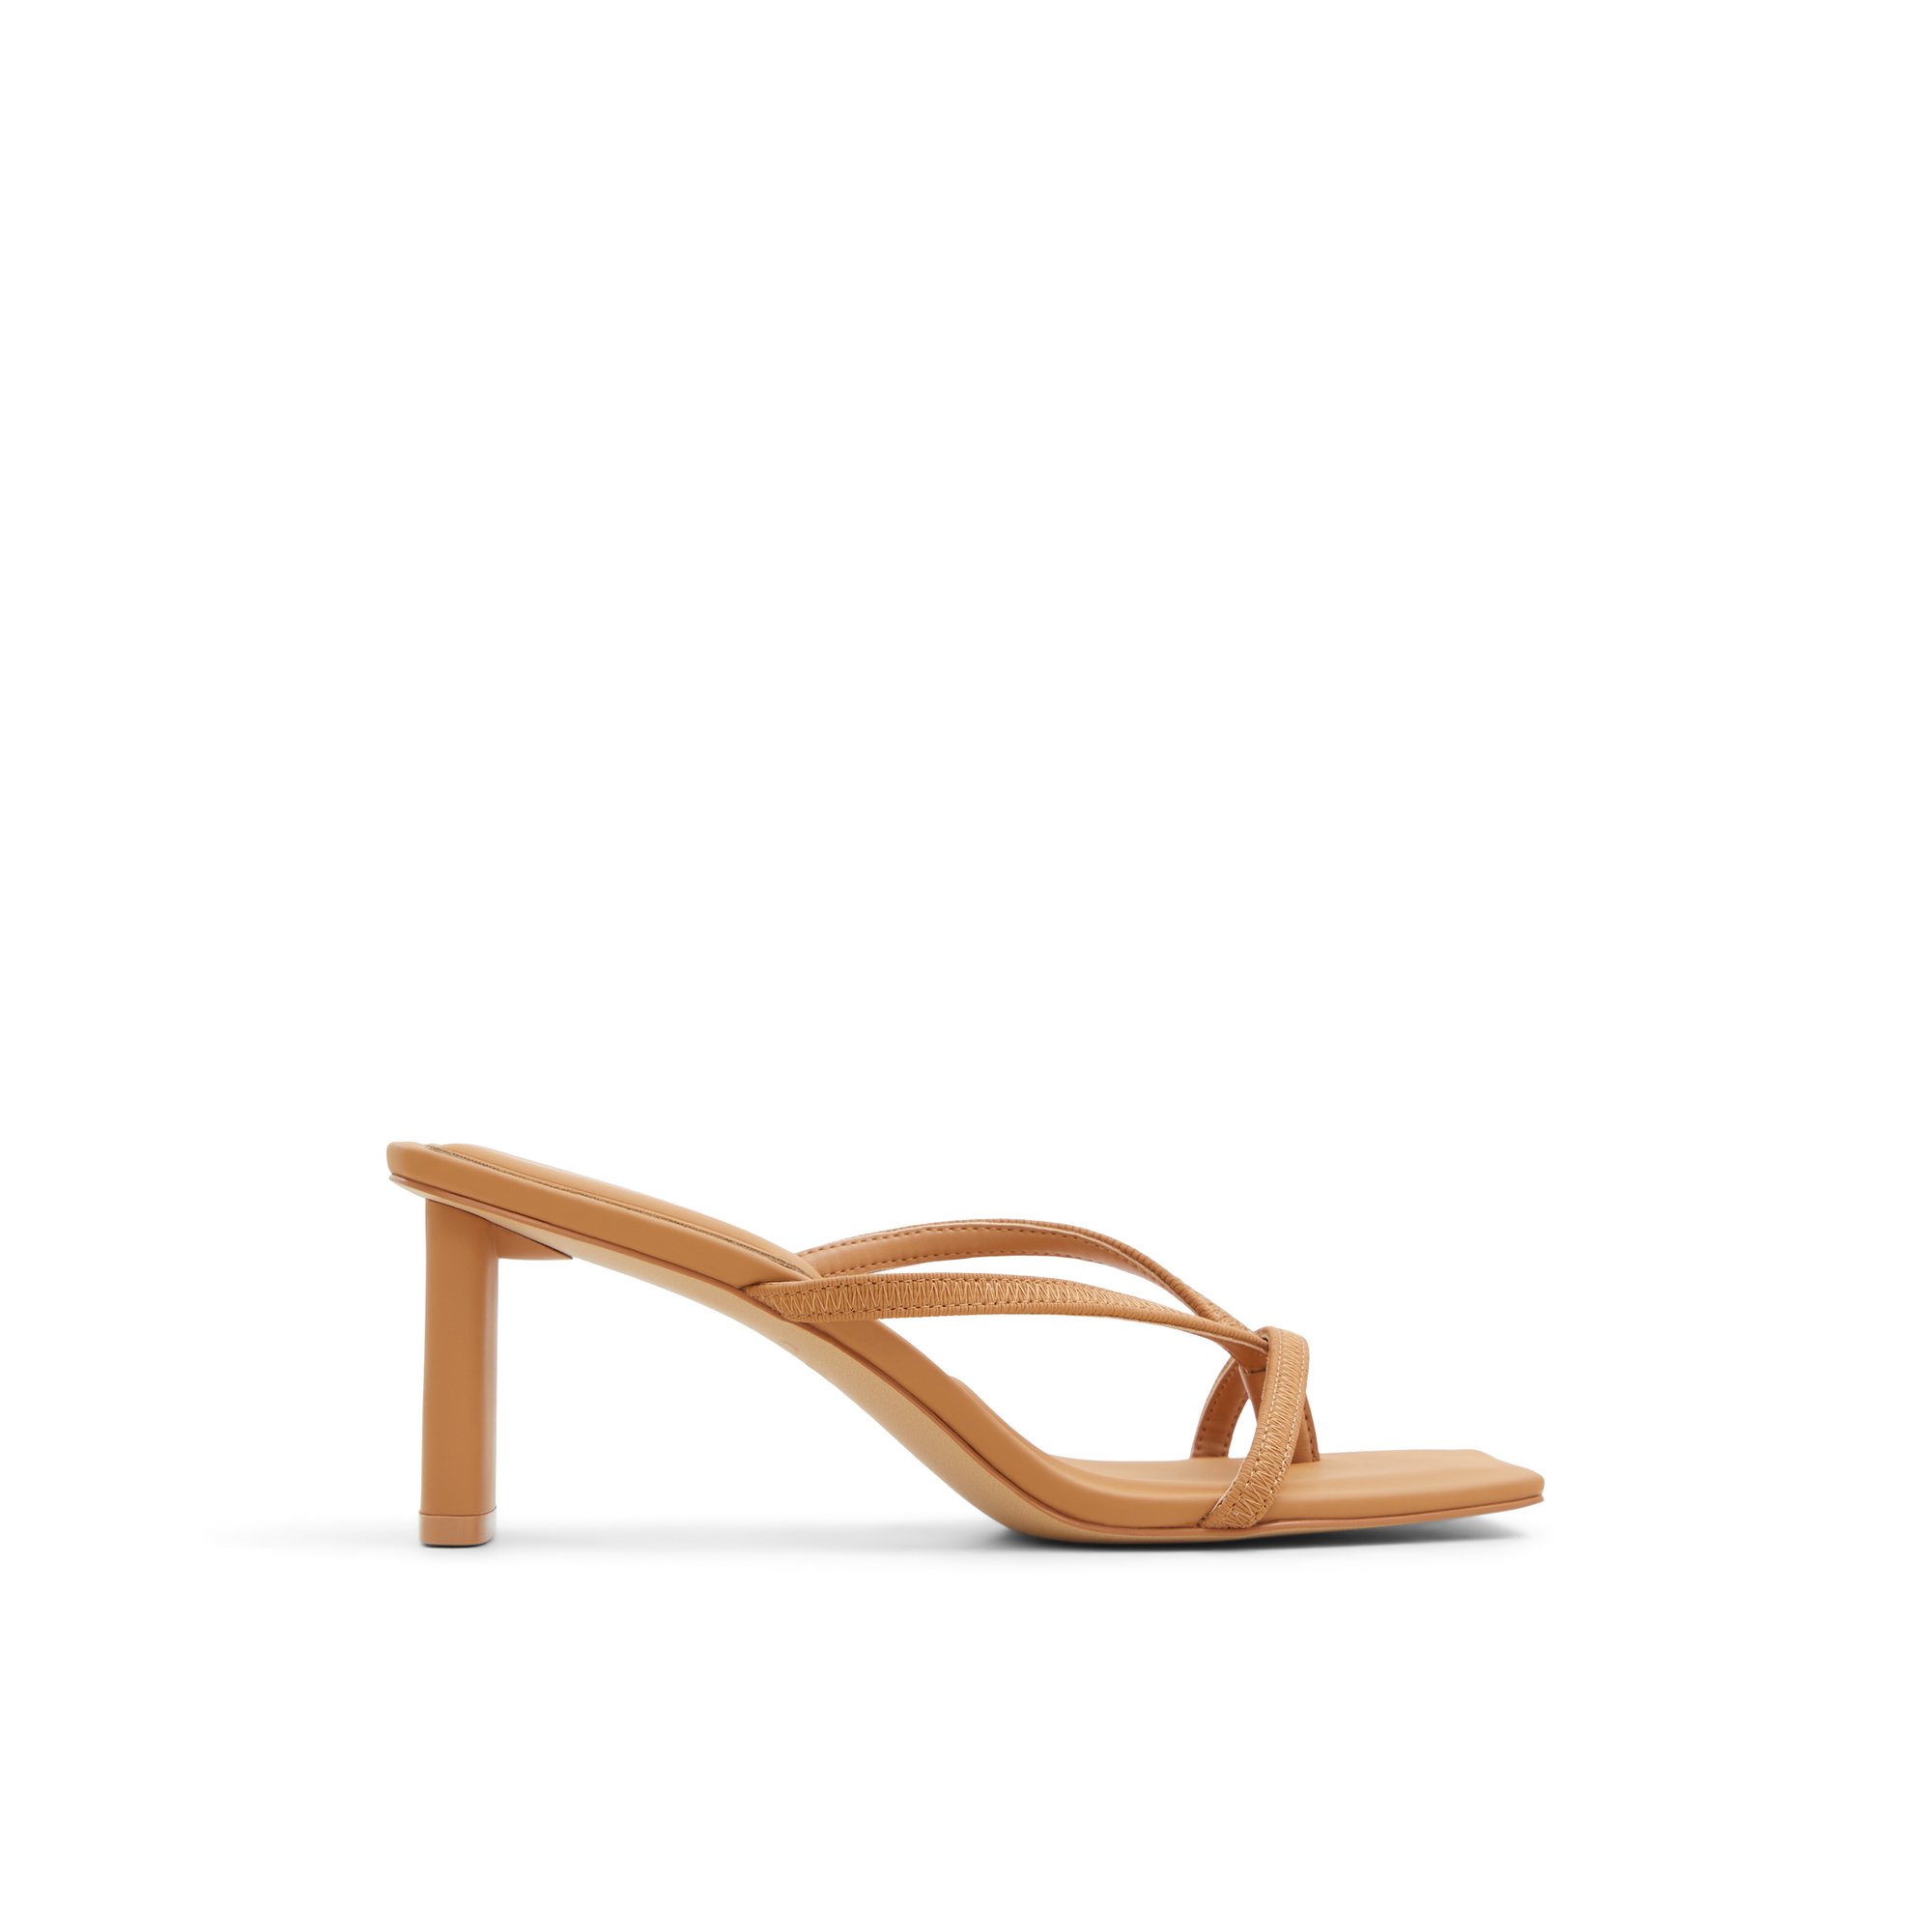 ALDO Sanne - Women's Strappy Sandal Sandals - Beige